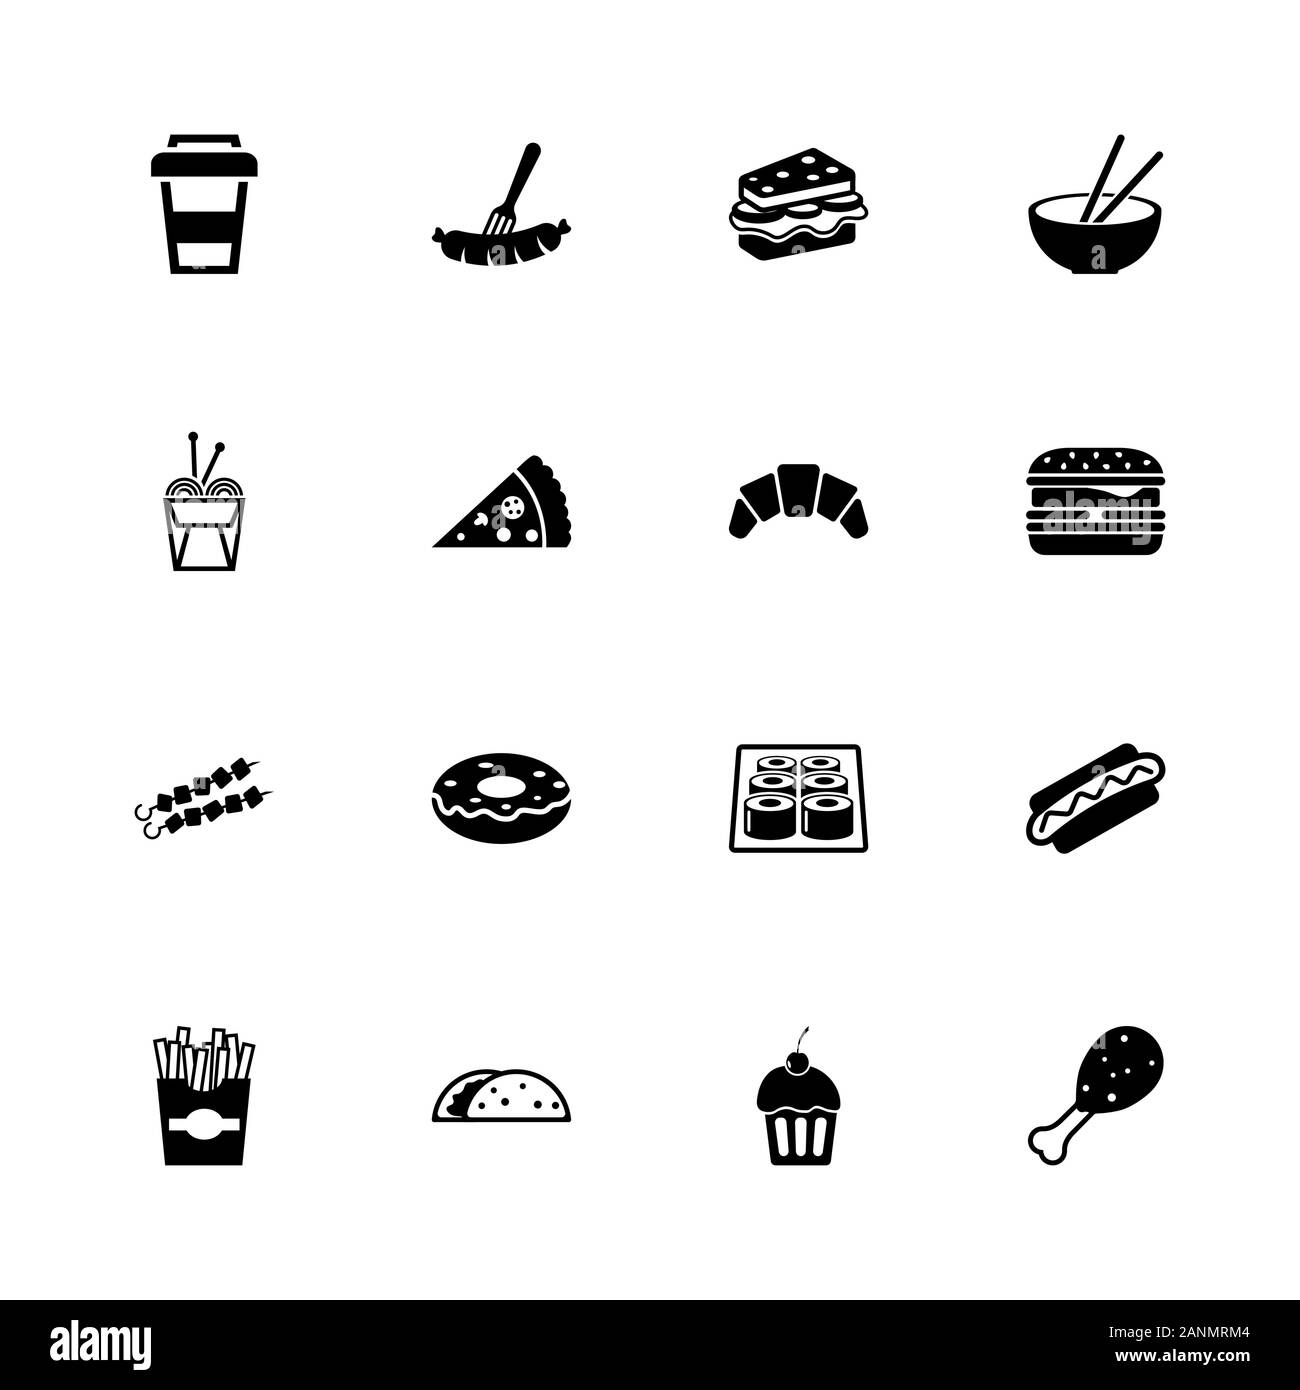 Fast Food icons - Étendre à n'importe quelle taille - Changement à n'importe quelle couleur. Télévision Vector Icons - Illustration noir sur fond blanc. Illustration de Vecteur